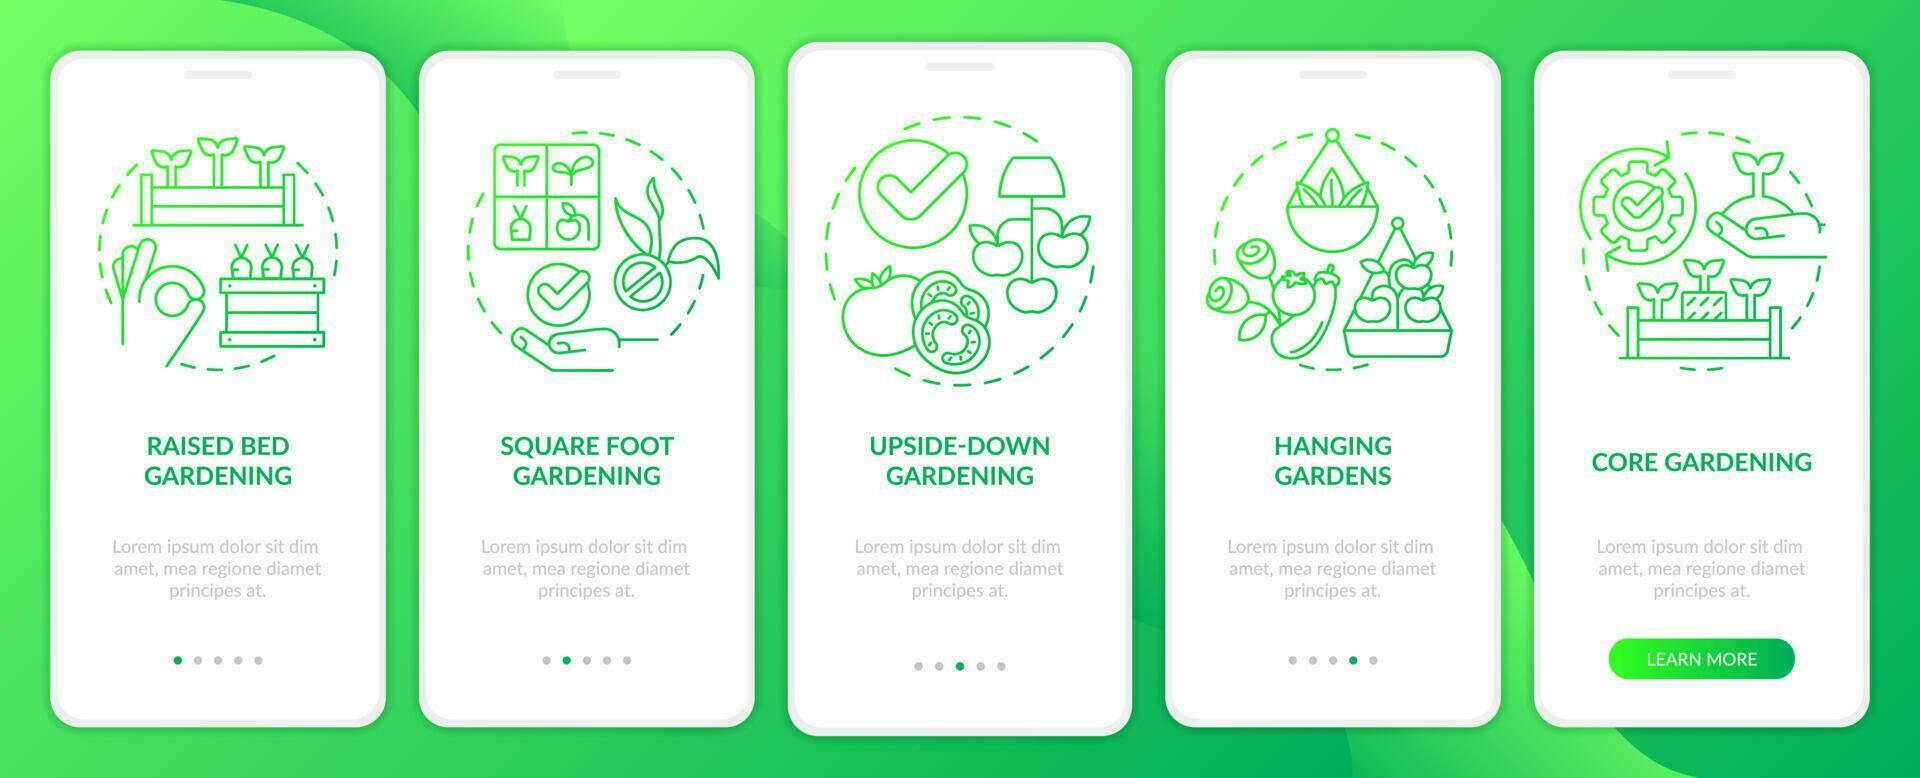 efficace jardinage vert pente l'intégration mobile app filtrer. plante se soucier procédure pas à pas 5 pas graphique instructions avec linéaire concepts. interface utilisateur, ux, gui modèle vecteur